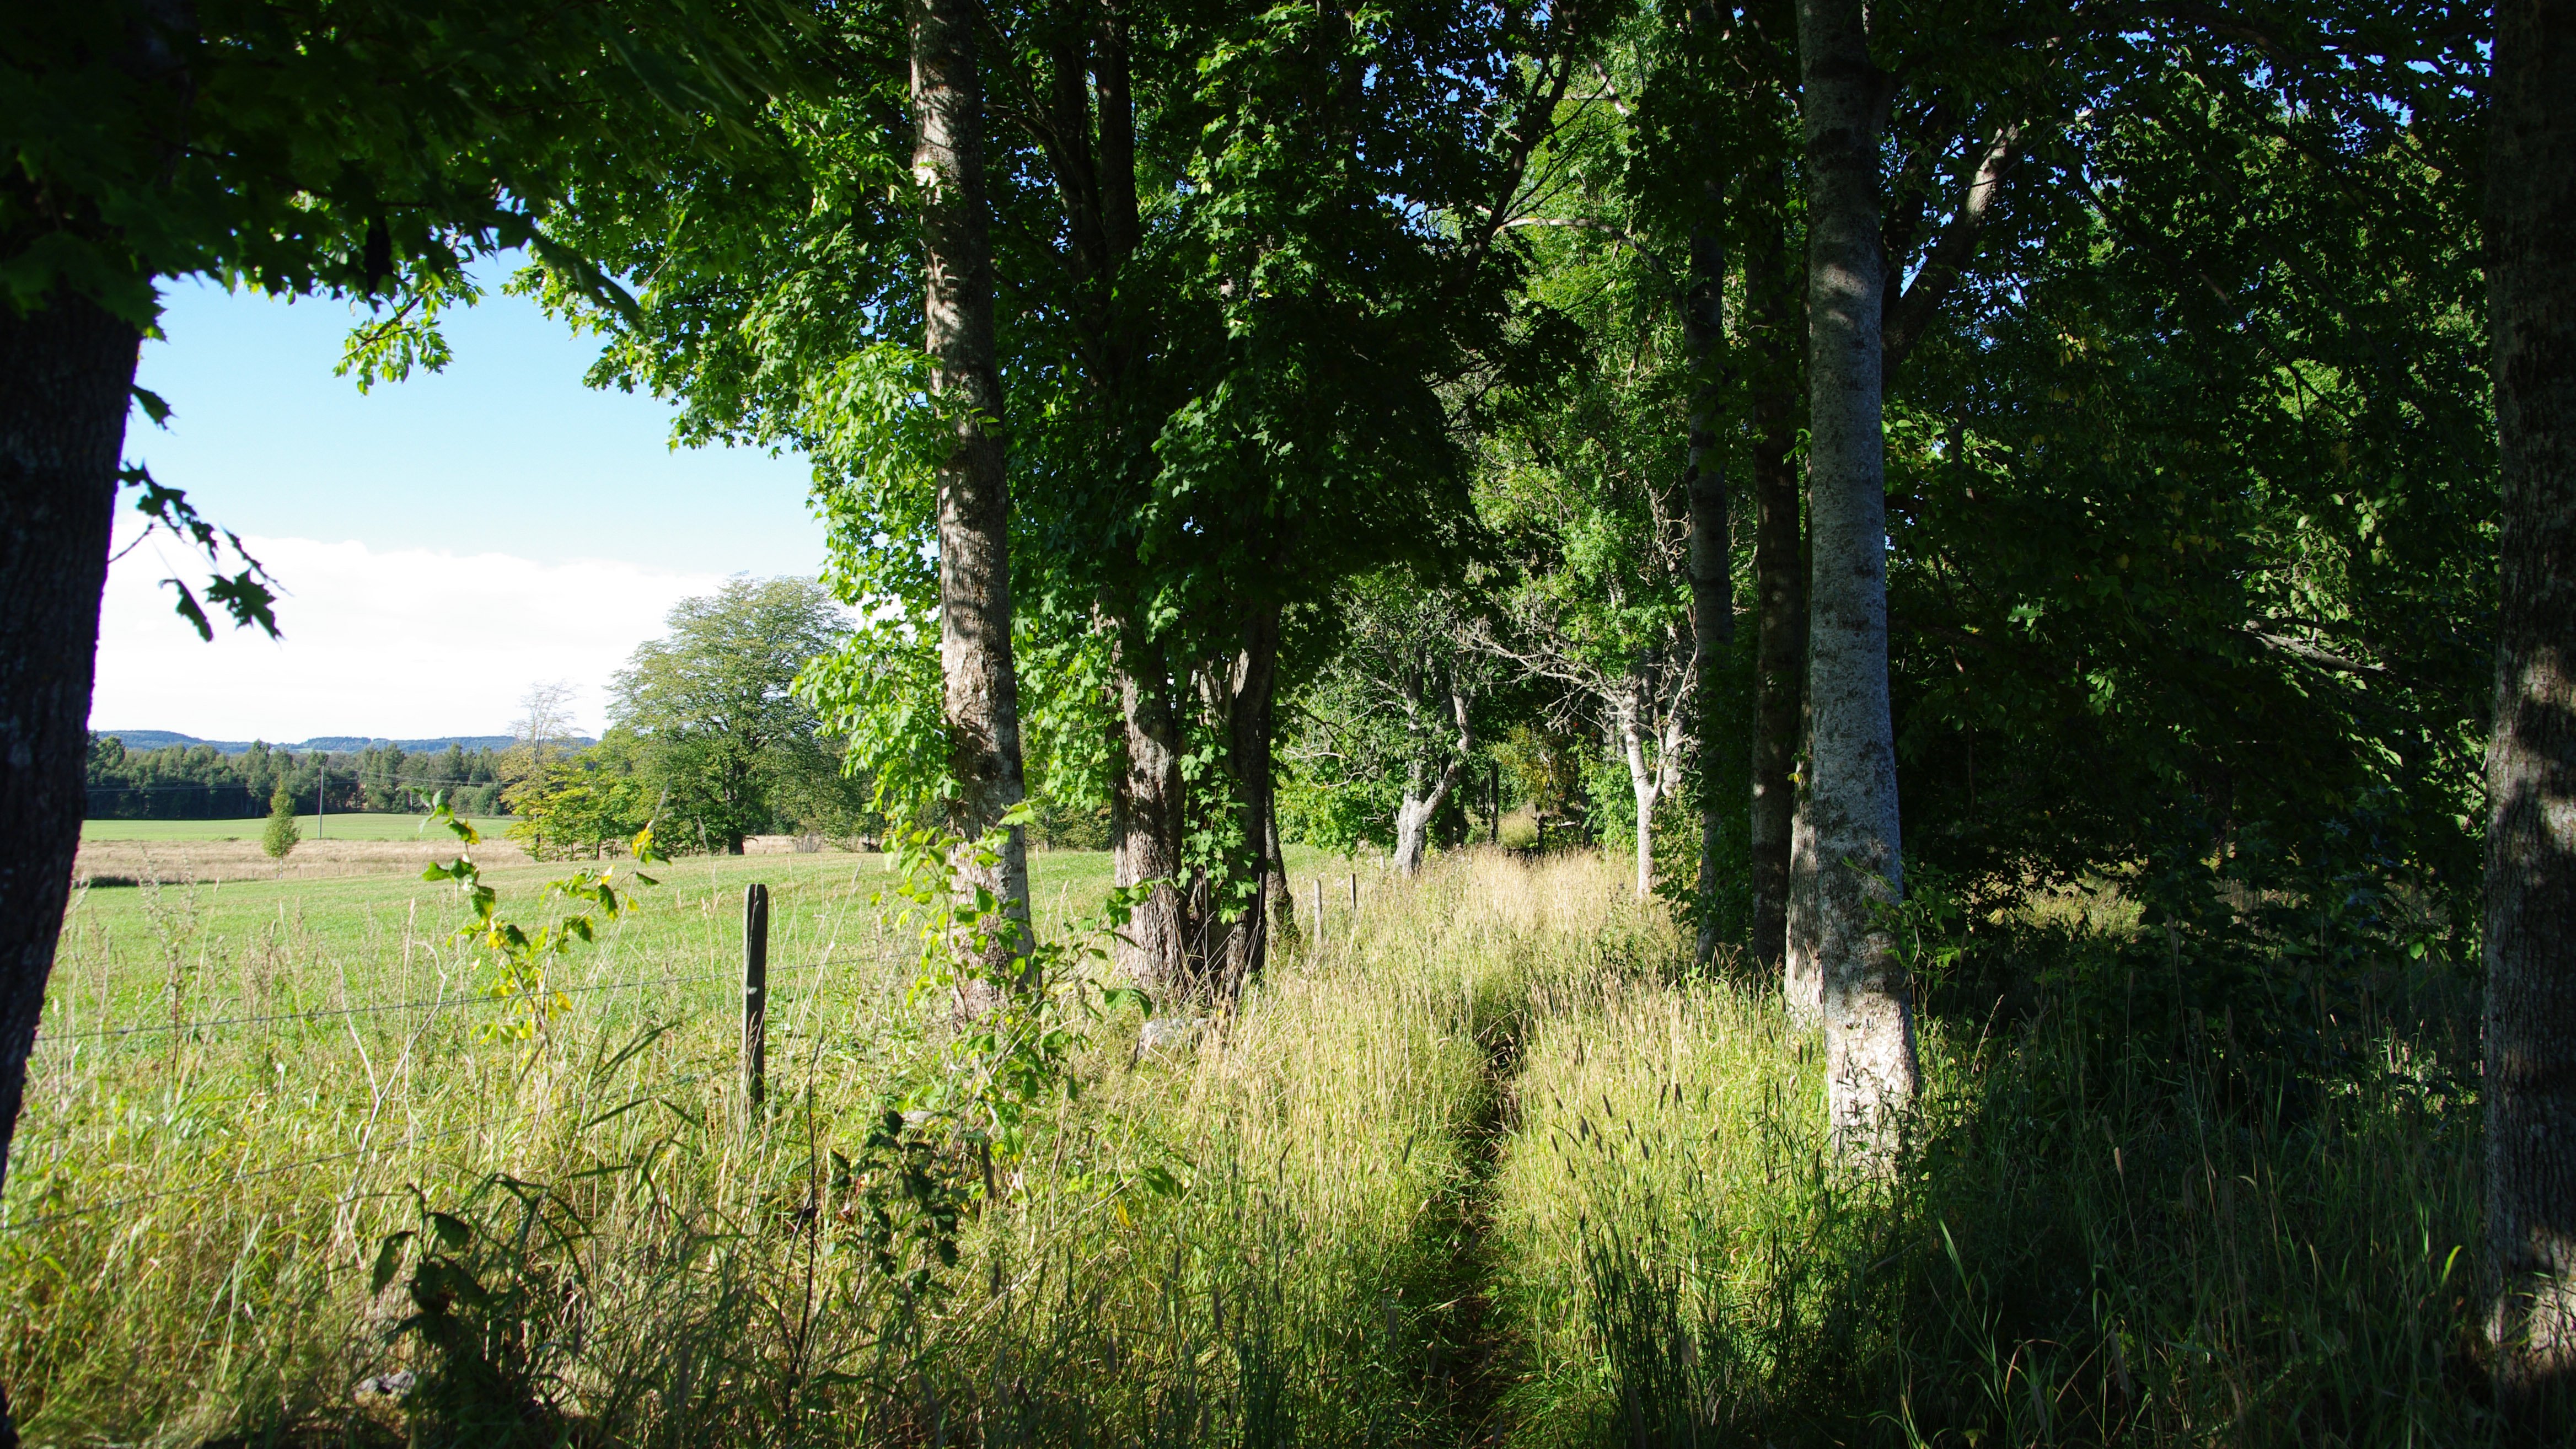 Ett skogsbryn med björkar och andra lövträd med en betesmark i bakgrunden bakom ett taggtrådsstängsel.